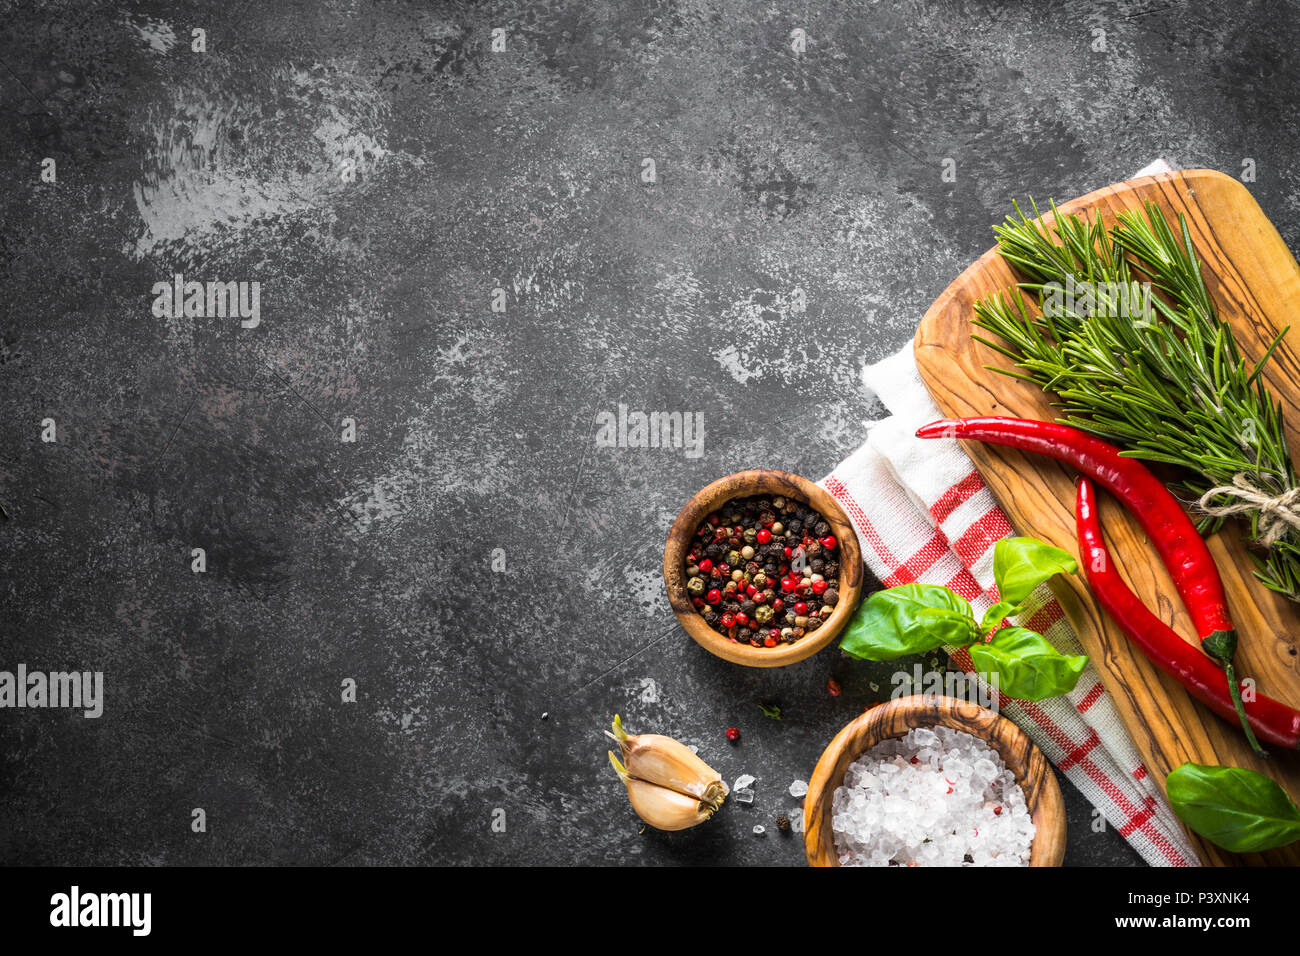 Épices, herbes et des ustensiles de cuisine sur la table en pierre noire. Arrière-plan de l'alimentation. Vue de dessus, copiez l'espace. Banque D'Images